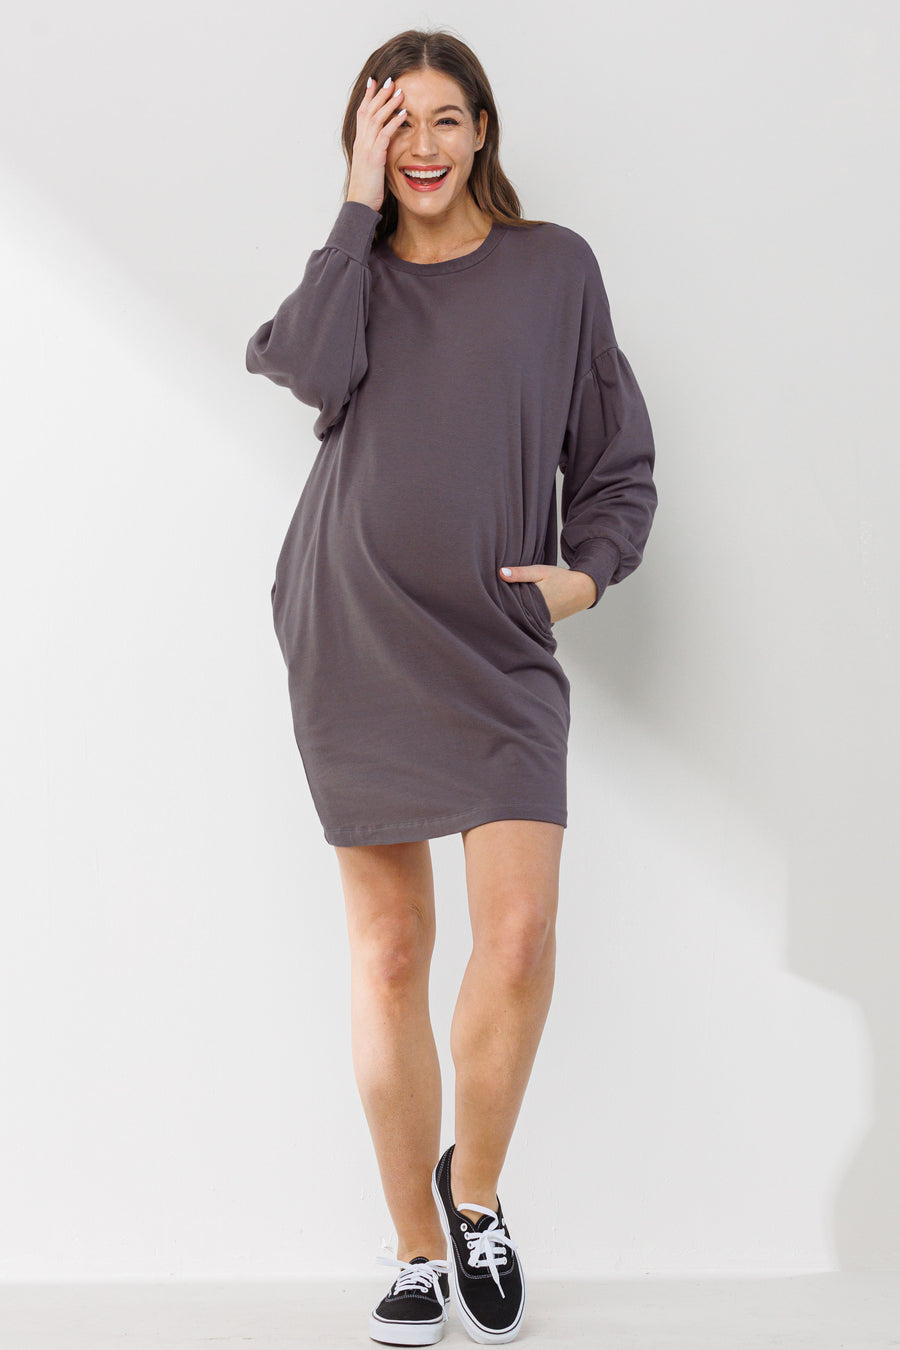 Camilla Sweater Pocket Dress XL